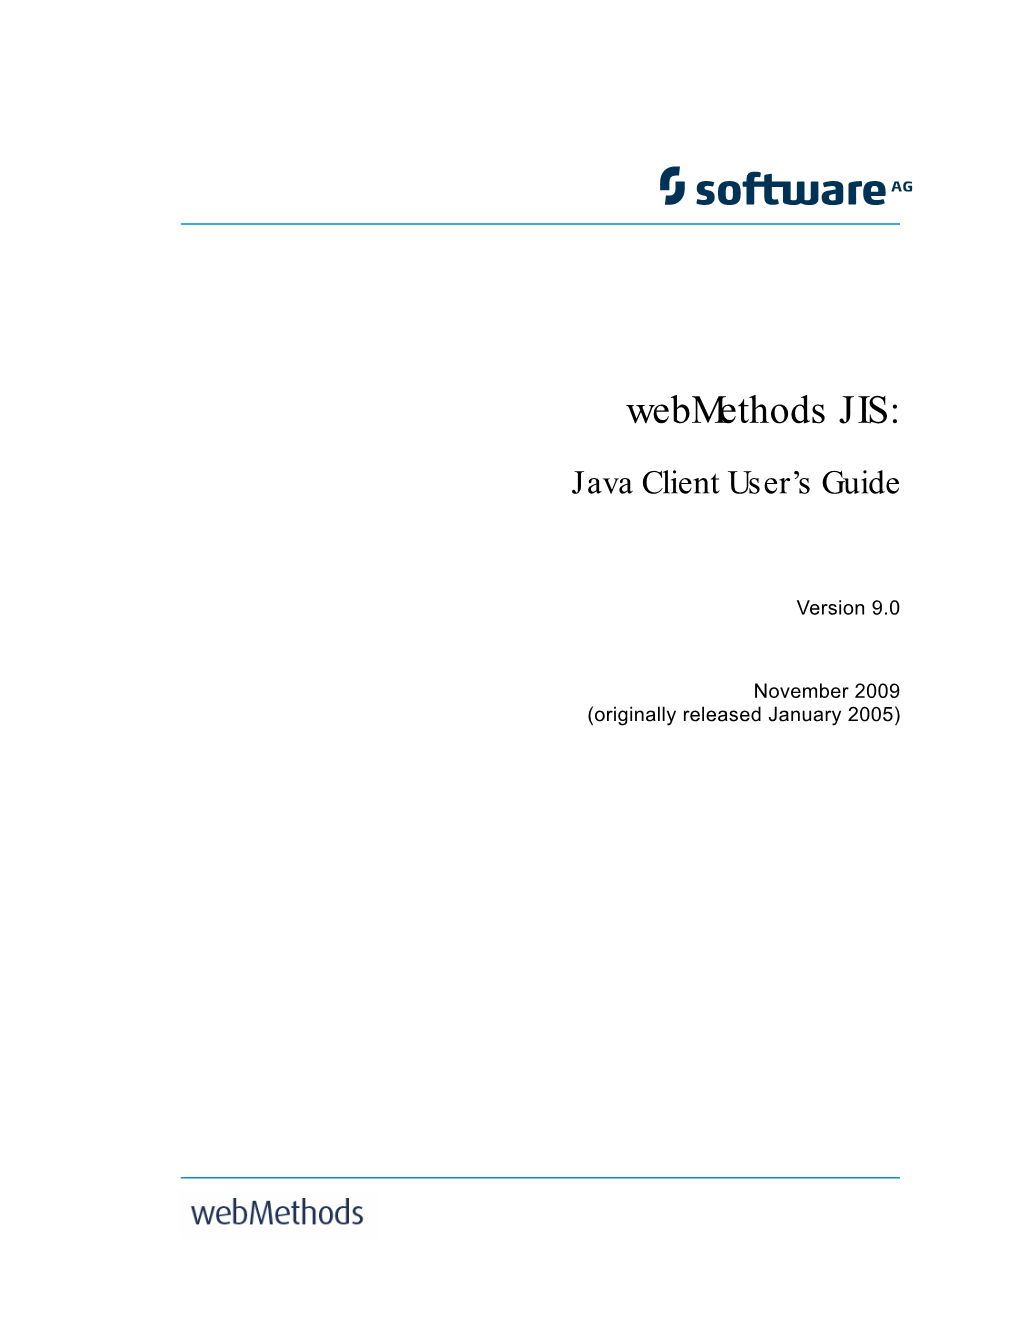 Webmethods JIS: Java Client User's Guide